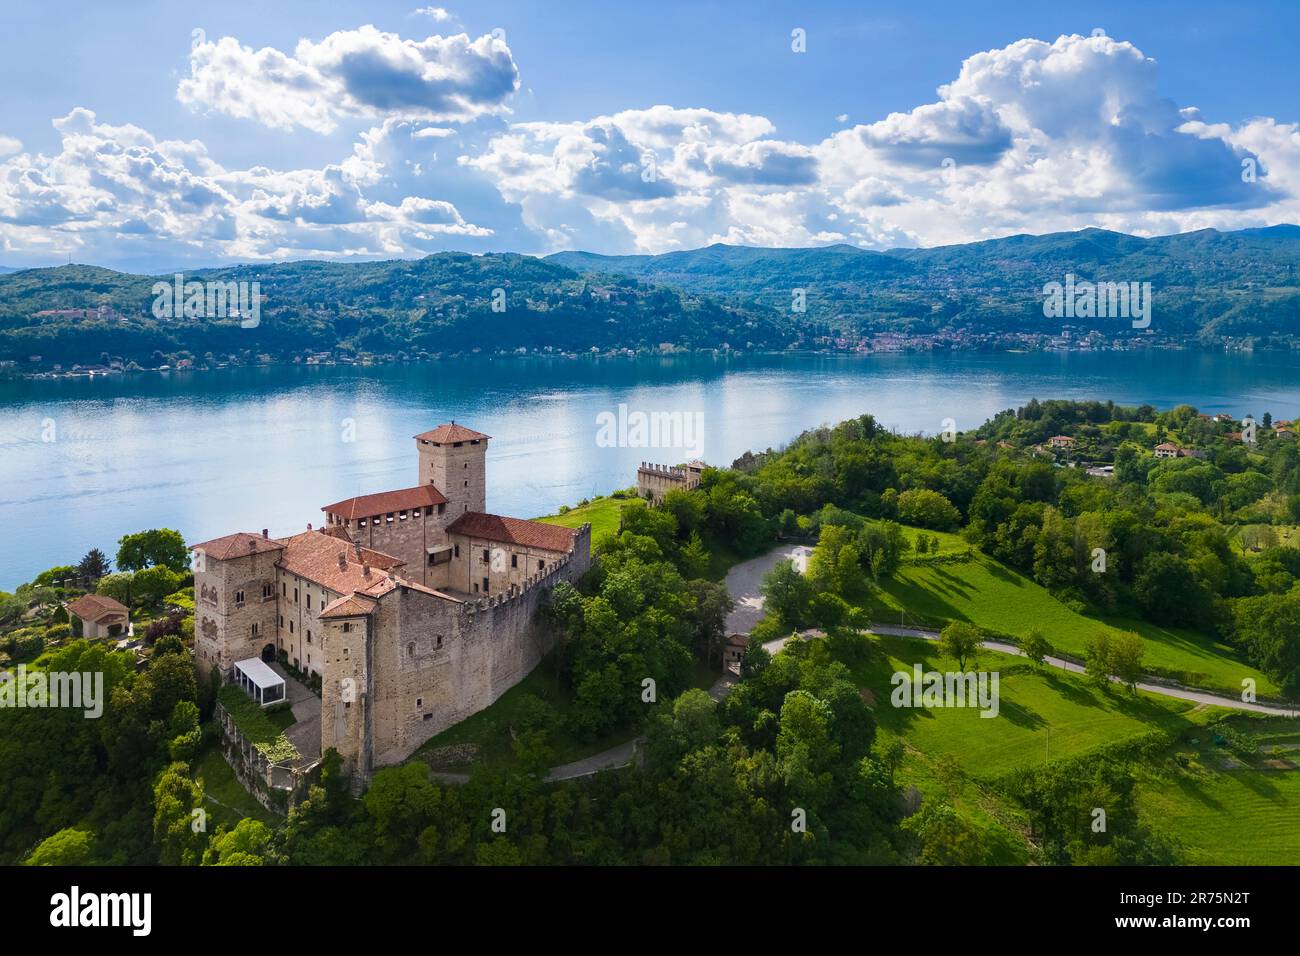 Vue sur la forteresse appelée Rocca di Angera pendant une journée de printemps. Angera, Lac majeur, quartier de Varèse, Lombardie, Italie. Banque D'Images